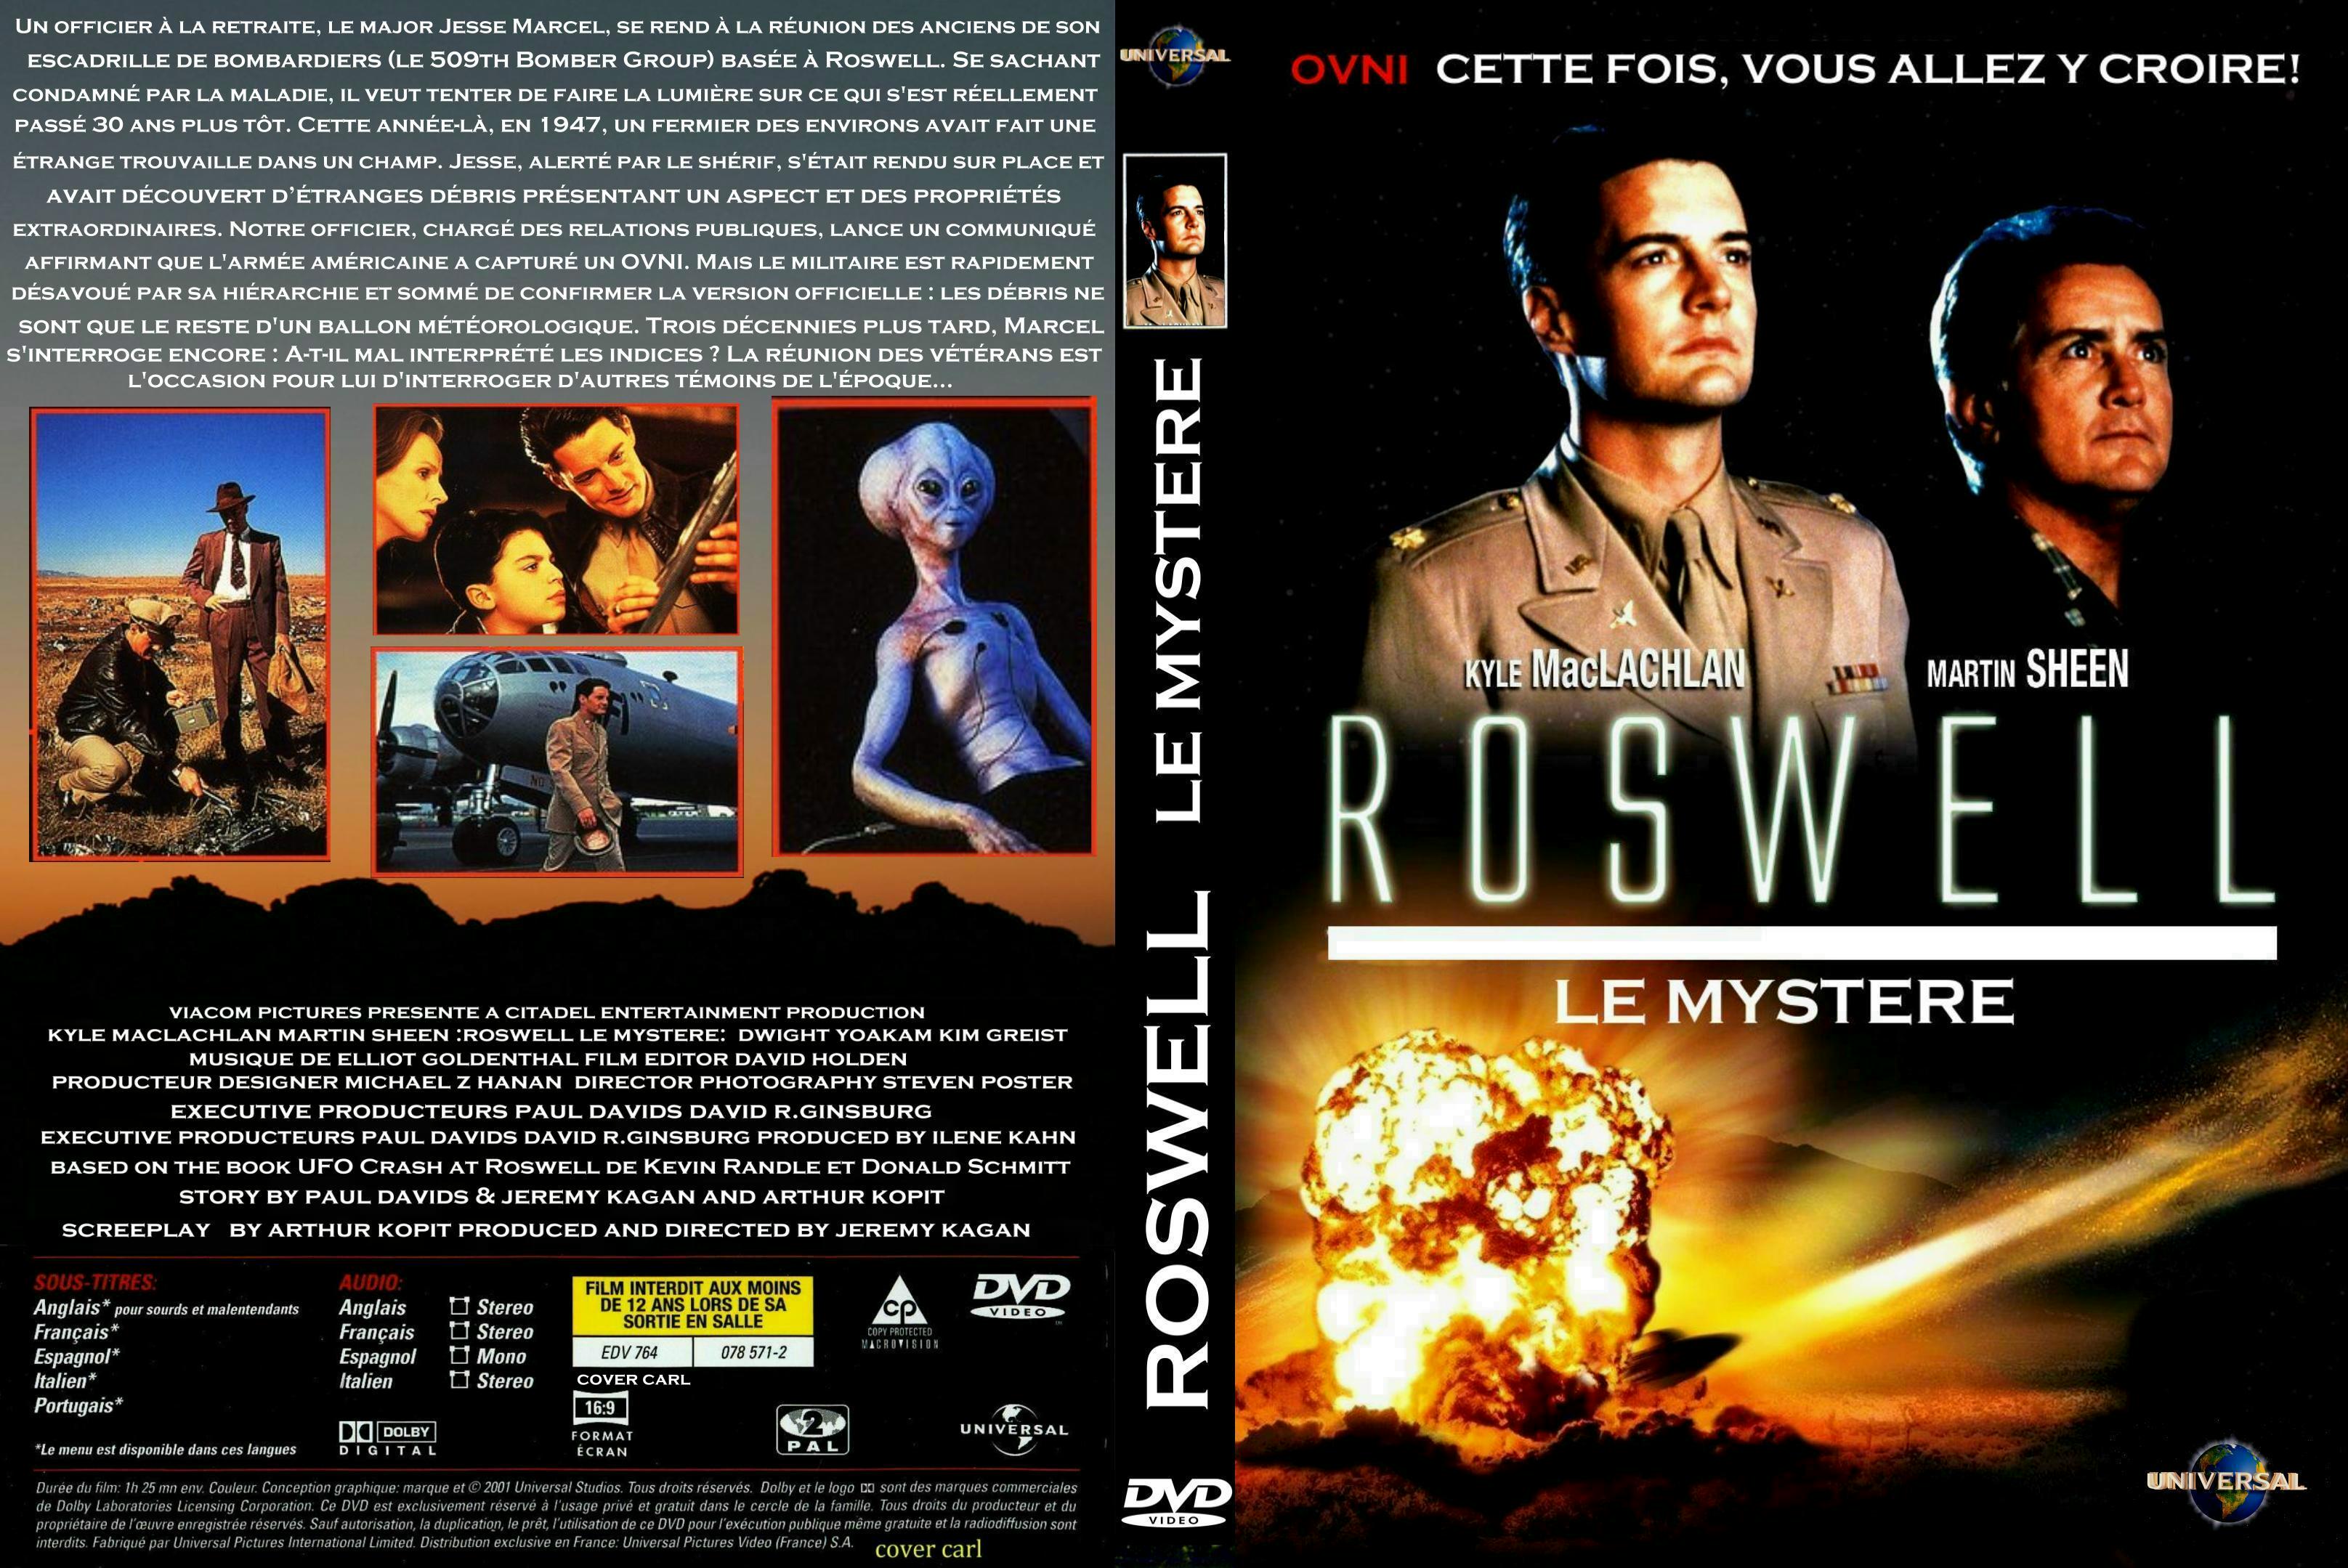 Jaquette DVD Roswell le mystre custom v2